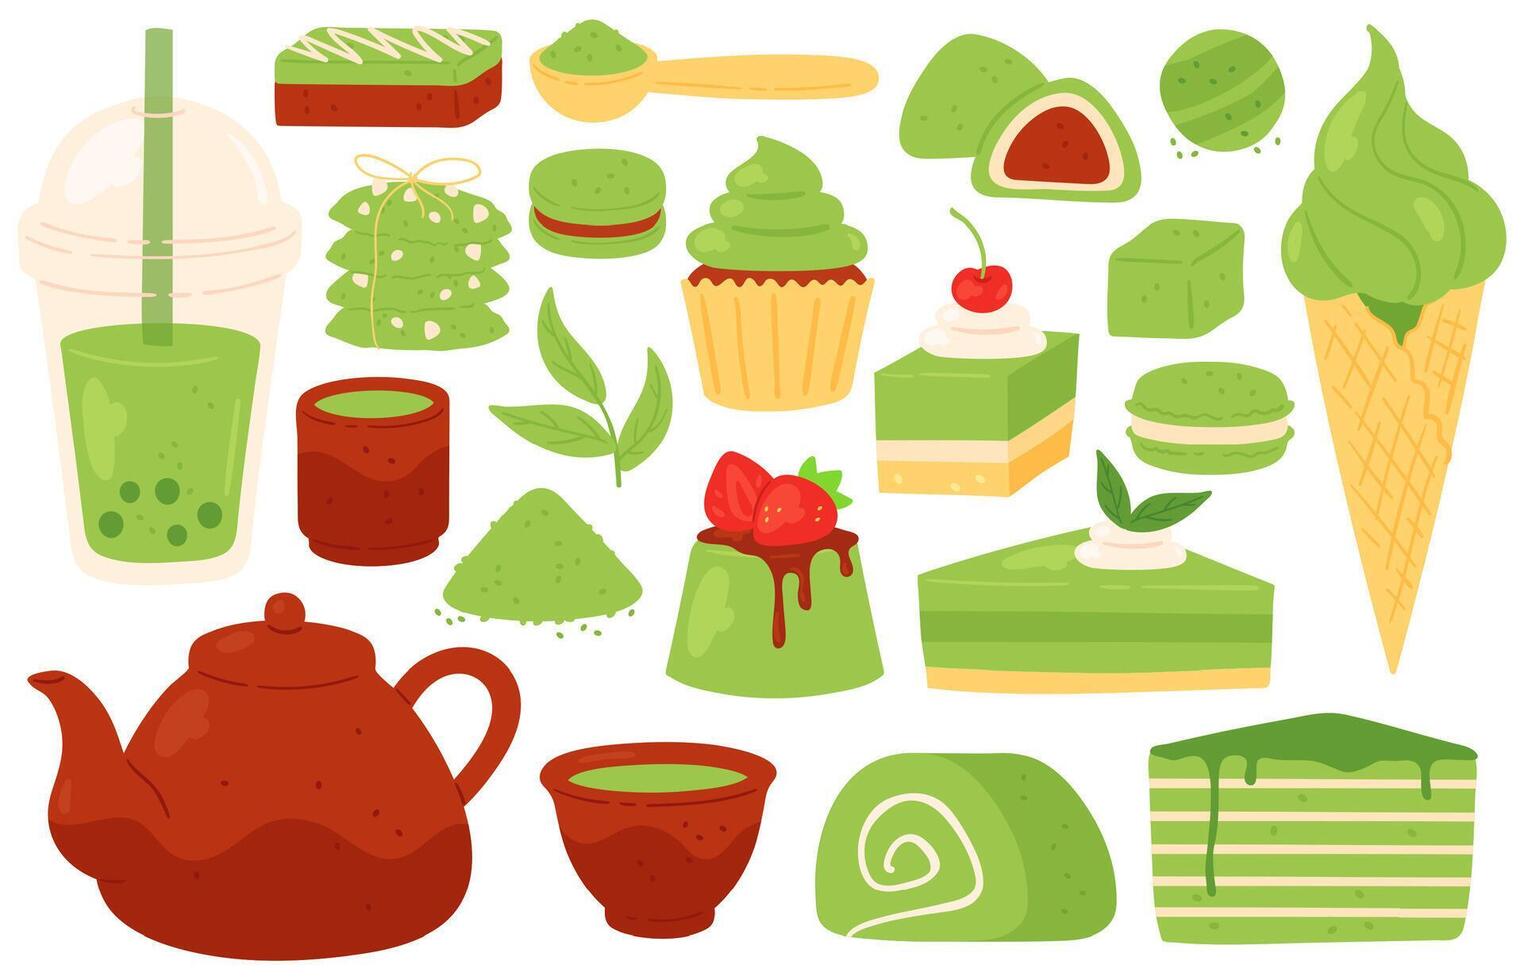 matcha té y dulces japonés verde matcha productos, polvo, hojas, tetera y tazas, burbuja té. sano Pastelería y postres vector conjunto